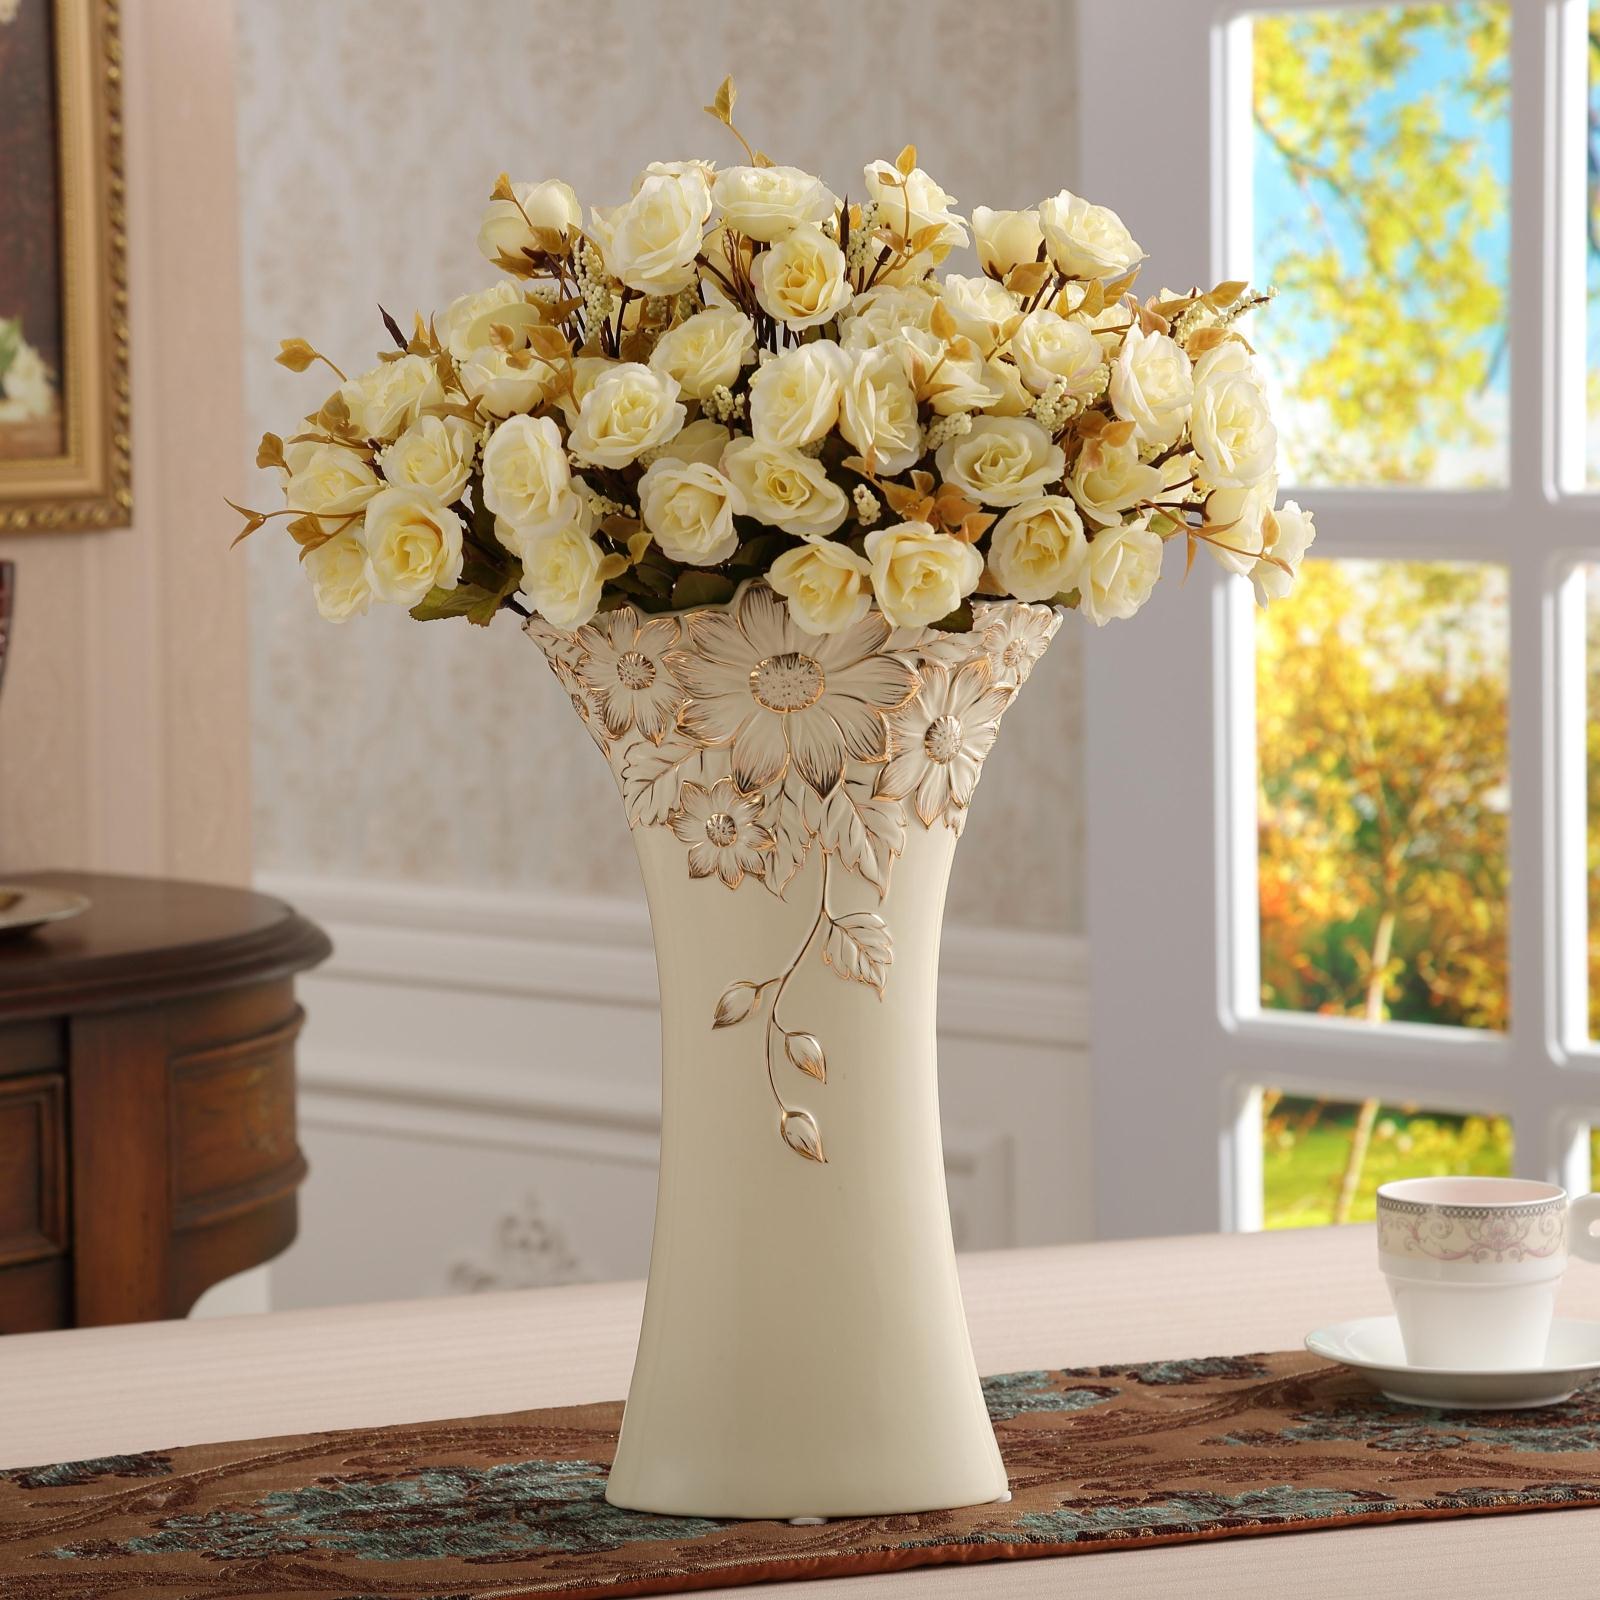 красивые вазы для интерьера дома